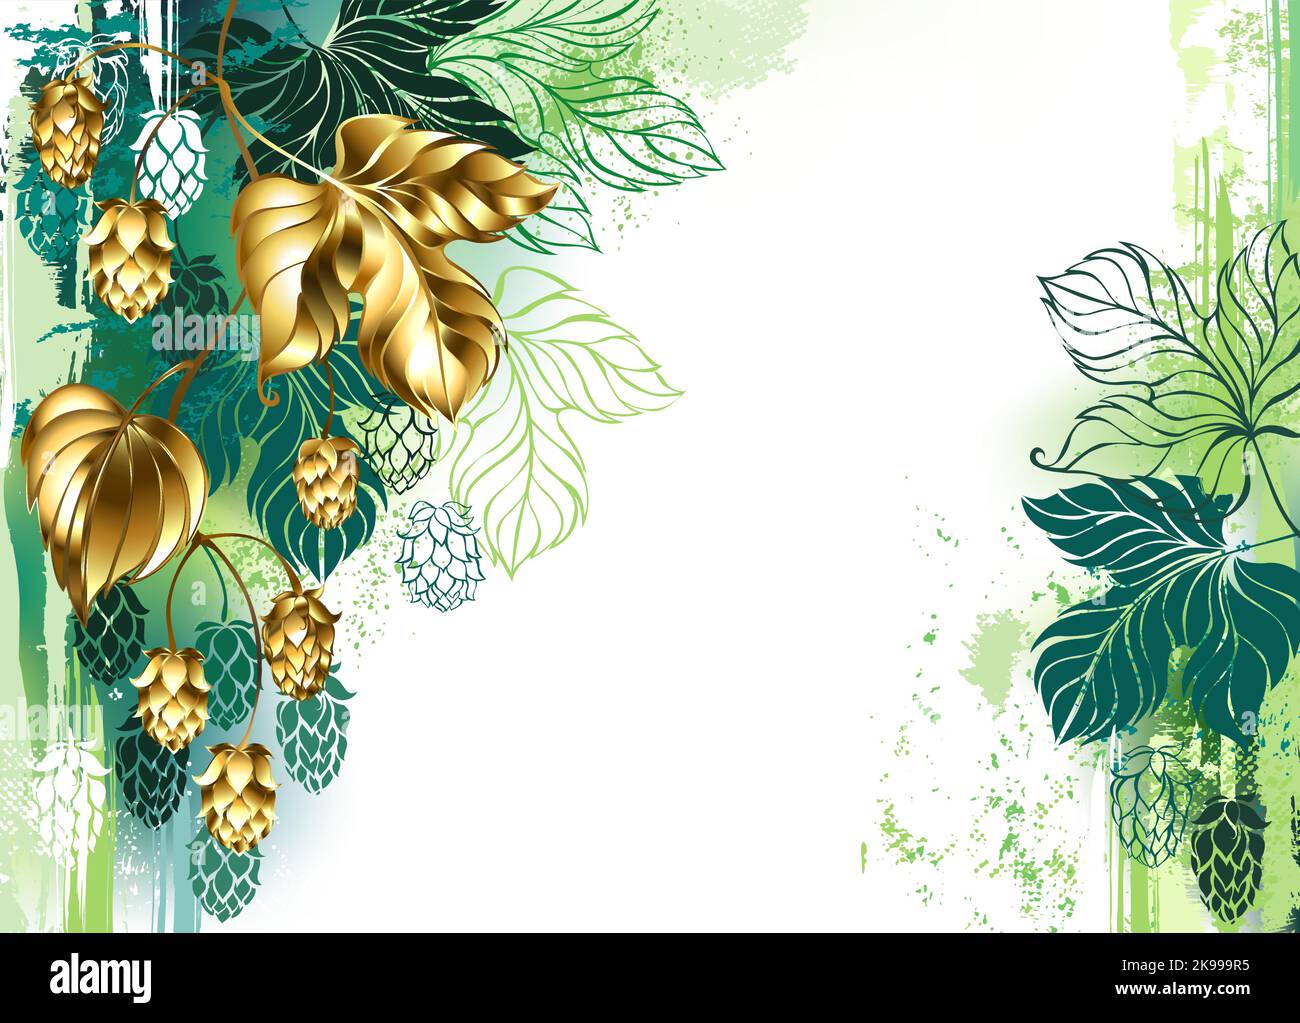 Peint avec de la peinture verte, fond clair, décoré avec une branche de houblon doré, brillant, avec de beaux cônes dorés. Golden hop. Illustration de Vecteur